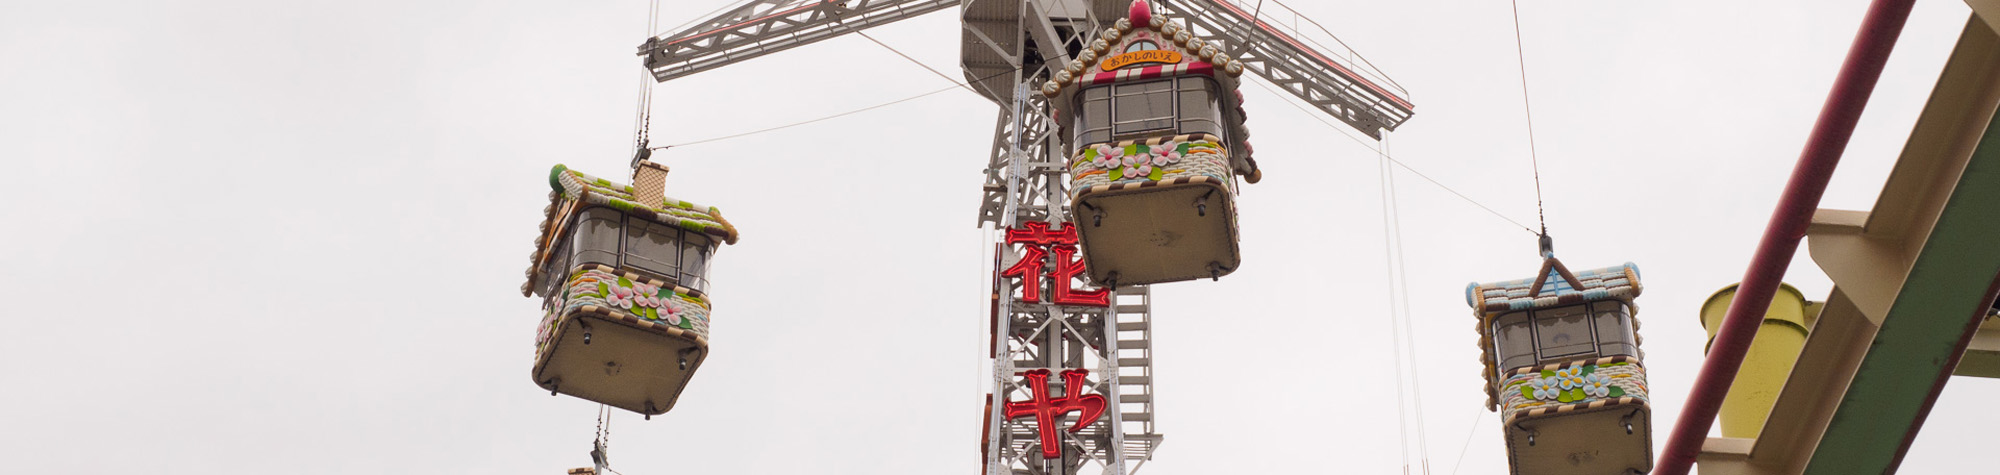 ญี่ปุ่นไปรอบๆ: เที่ยวสวนสนุกสไตล์ญี่ปุ่นฮานะยาชิกิ